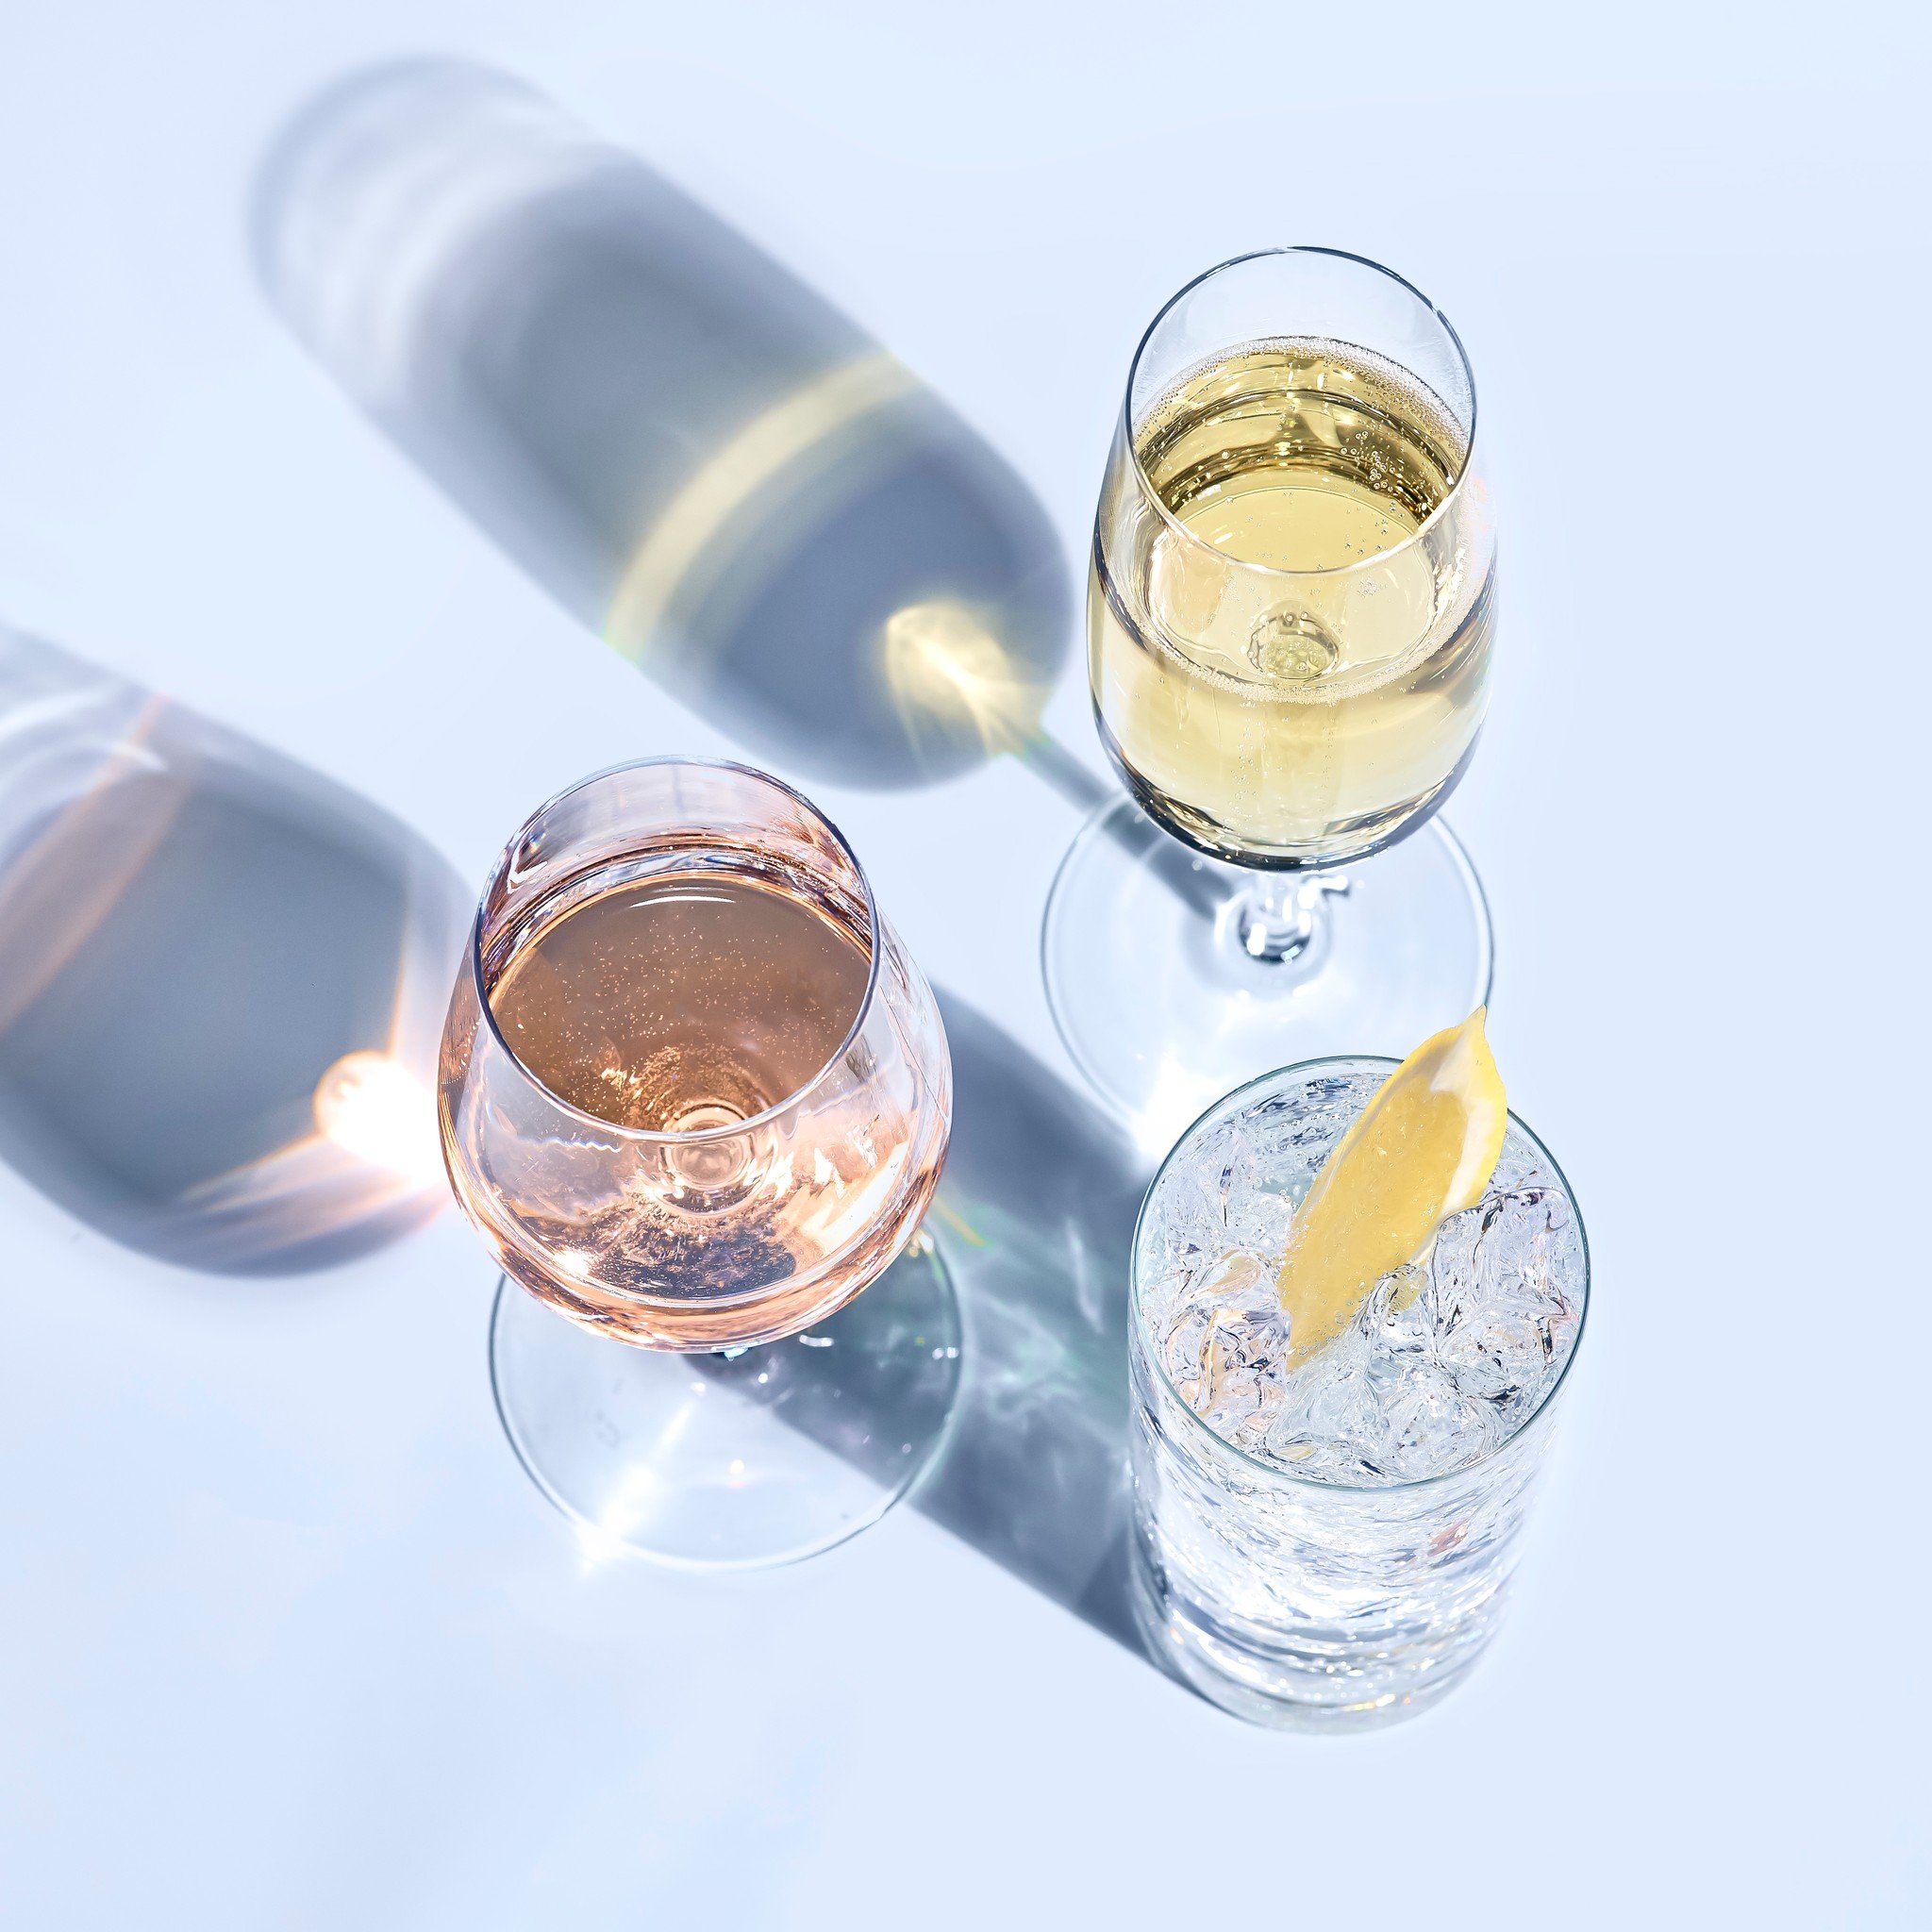 Vad dricker du helst - Cocktails, Vin eller Bubbel?? Kommentera med Emoji💜❤️💛

Cocktails💜
Vin❤️
Bubbel💛

#no1beverages #no1foreveryone #cocktail #vin #bubbel #cocktails #viner #mousserande #vintips #dryckestips #dryck #drycker #drink #drinkar #dr